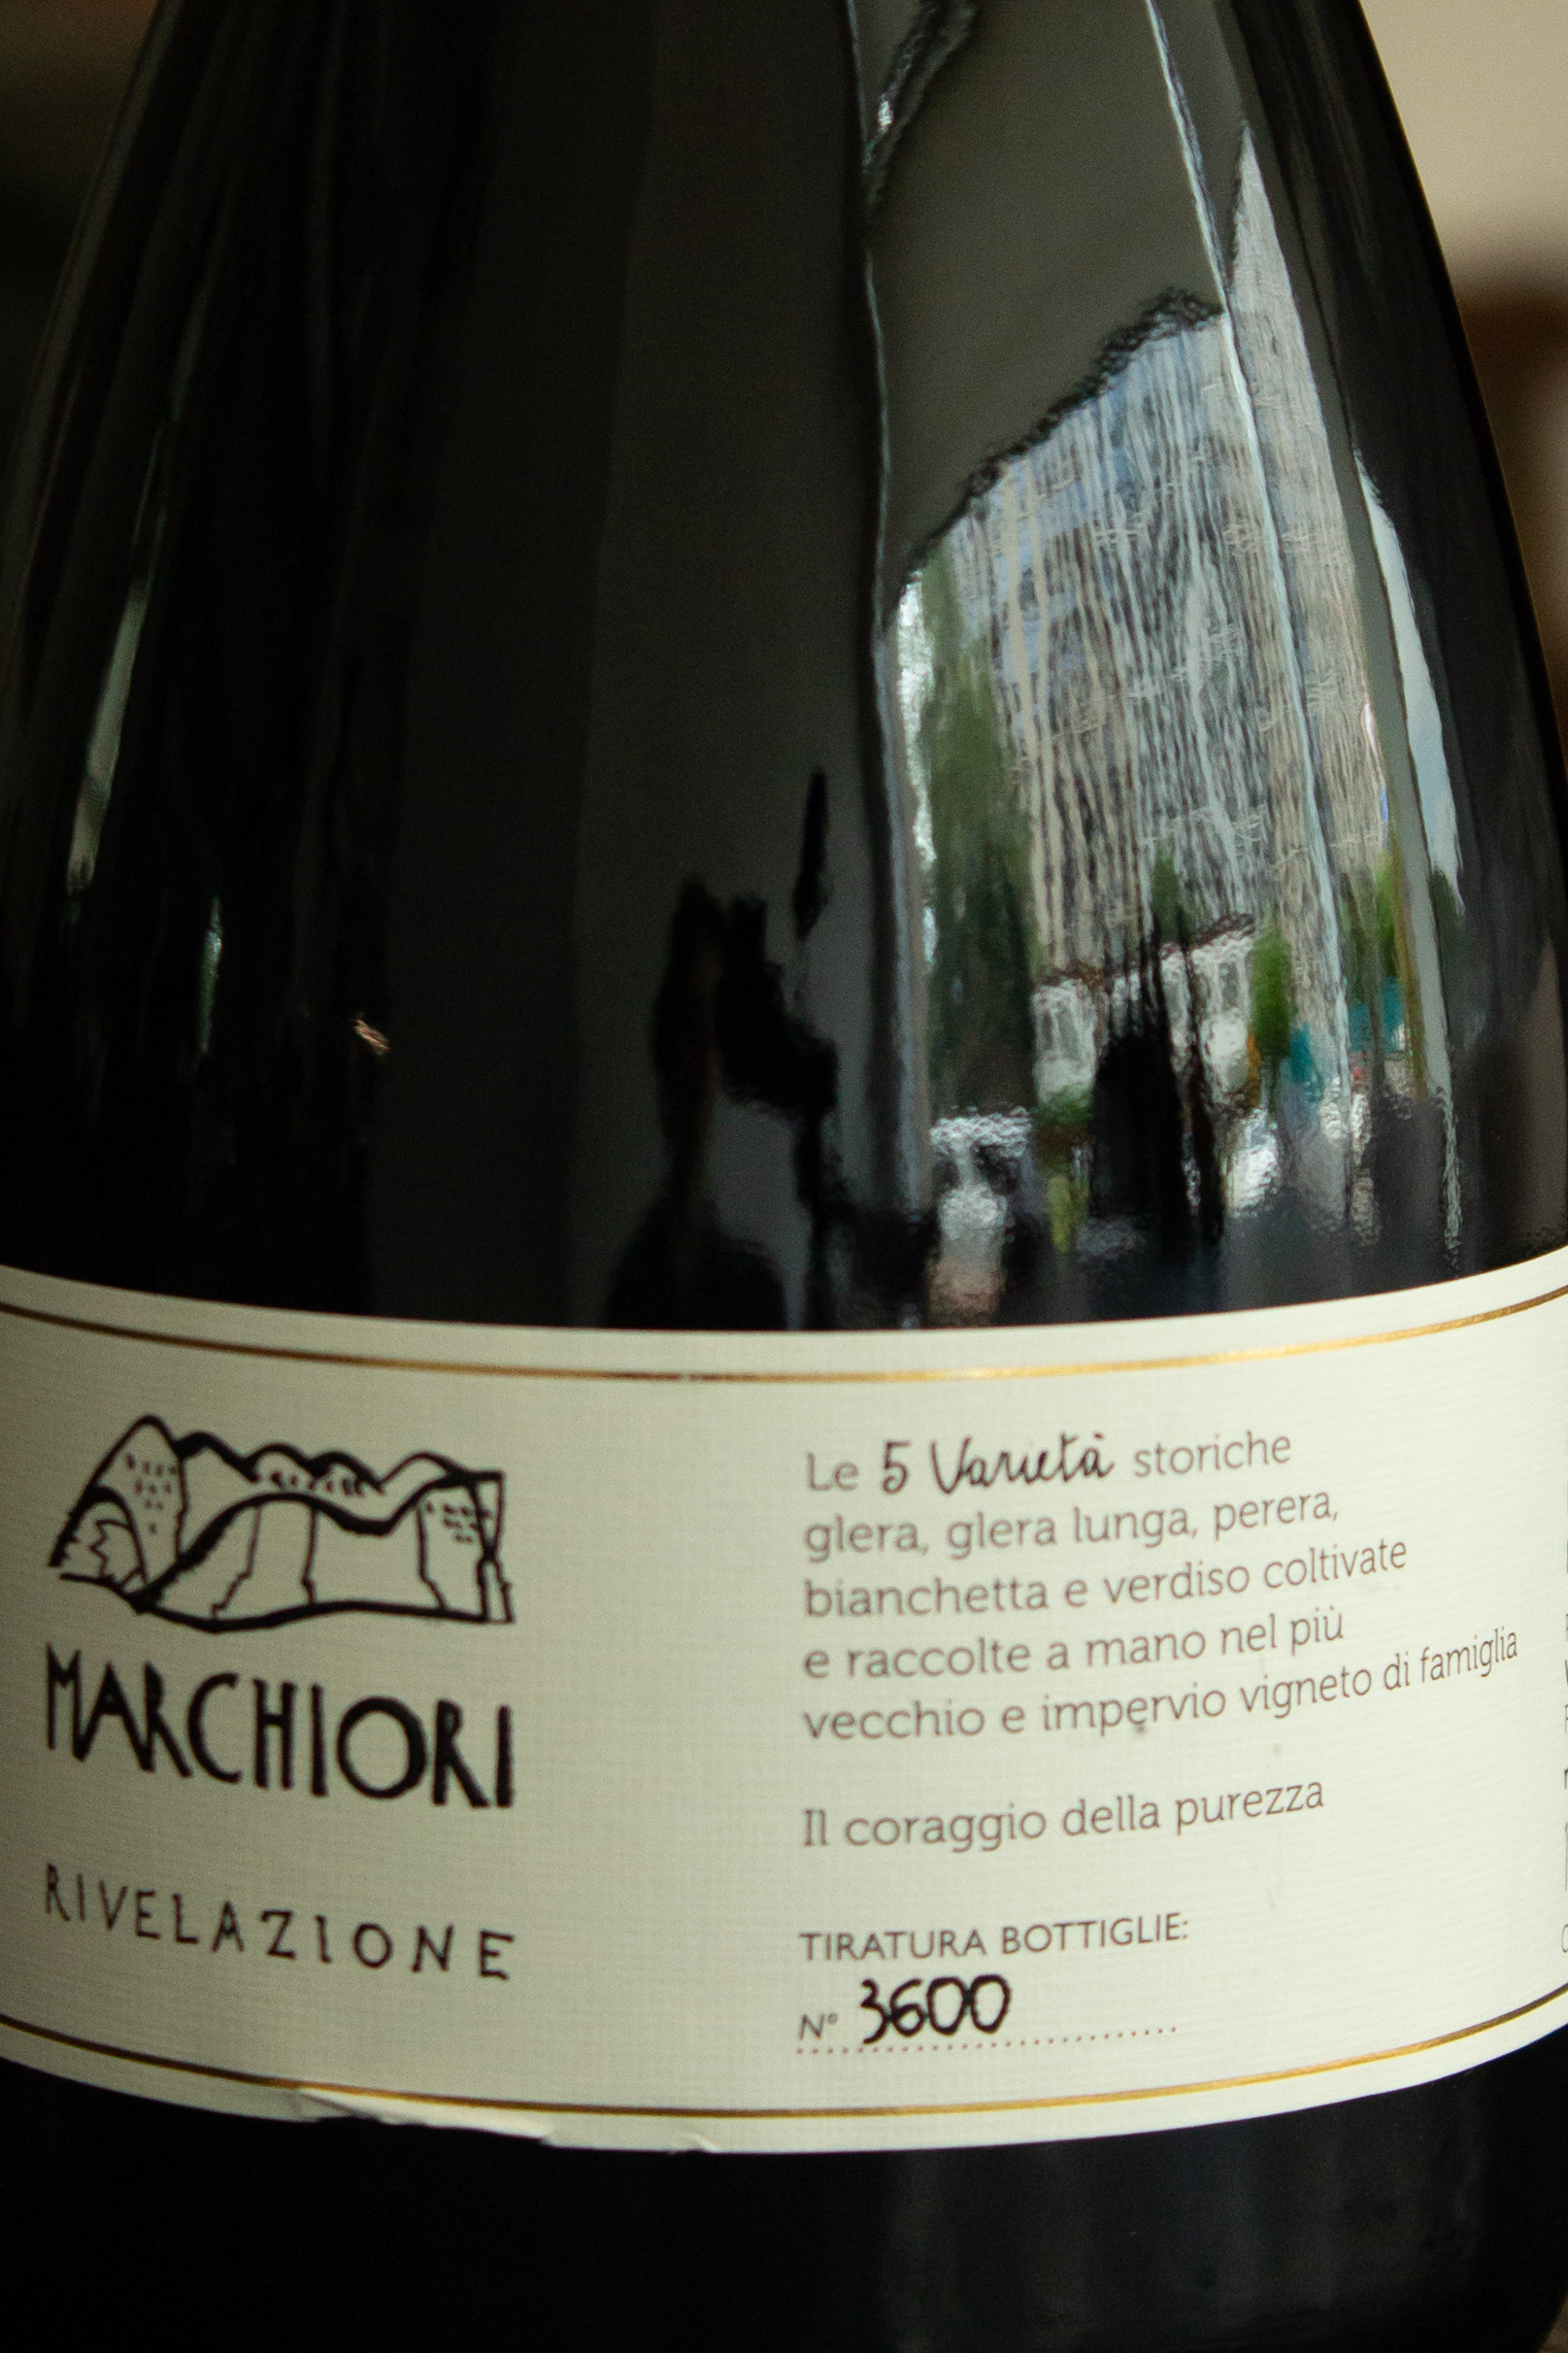 Игристое вино Marchiori Rivelazione Valdobbiadene Prosecco Superiore / Маркьори Ривелационе Вальдобьядене Просекко Супериоре